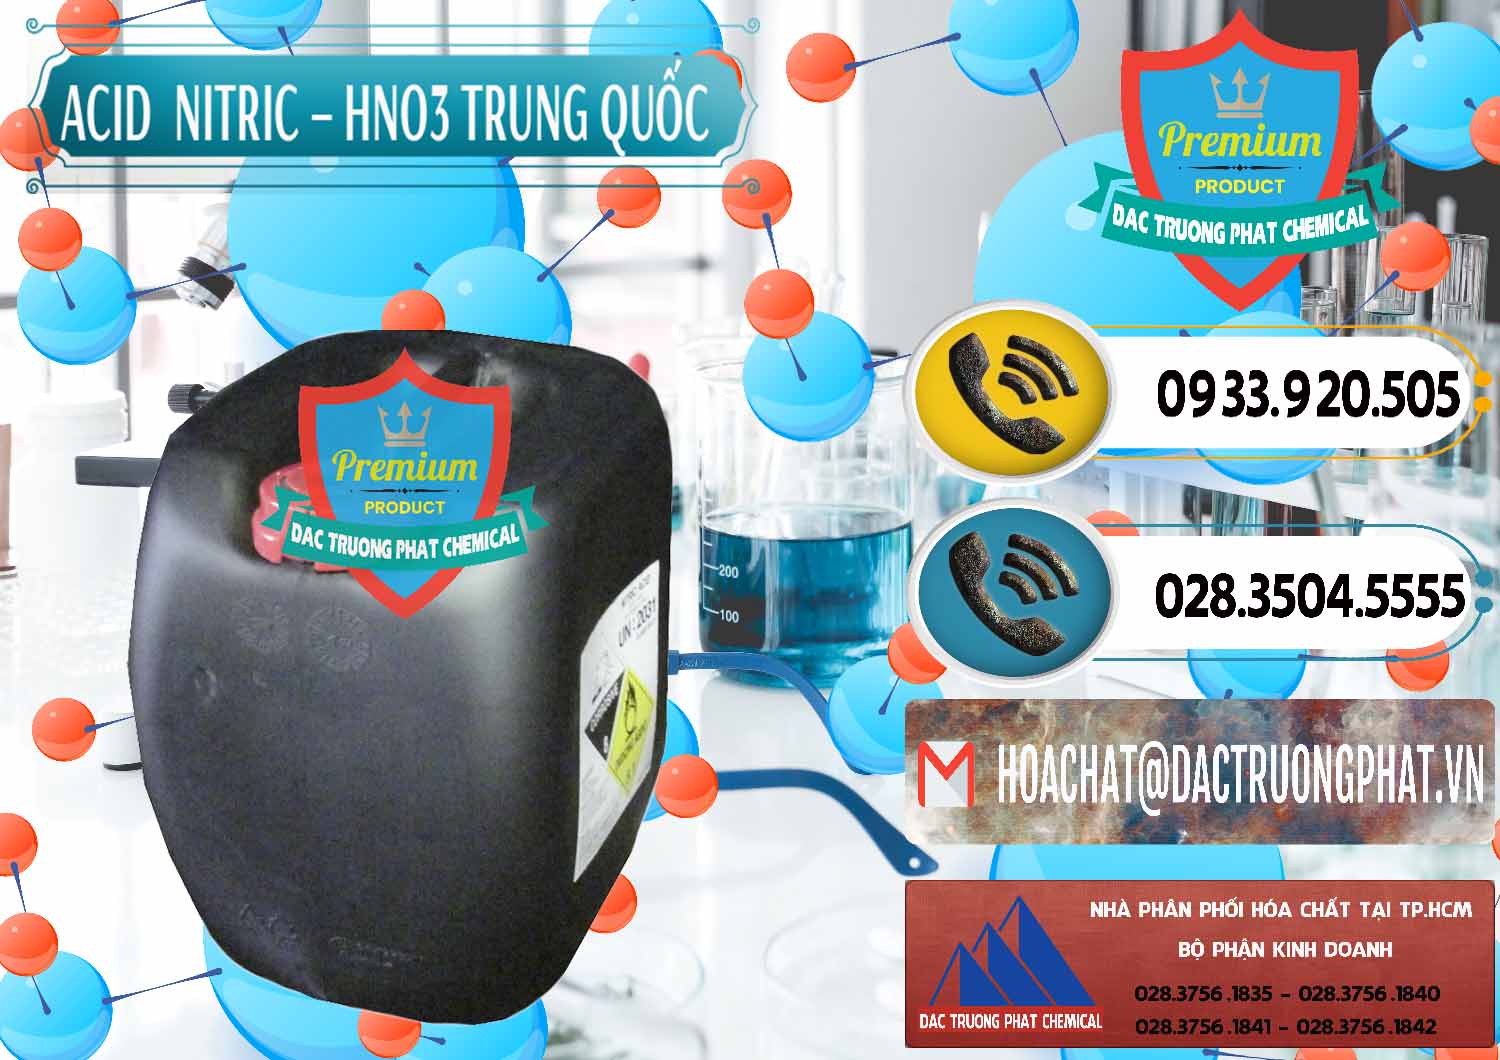 Công ty chuyên bán và phân phối Acid Nitric – Axit Nitric HNO3 68% Trung Quốc China - 0343 - Cty bán và cung cấp hóa chất tại TP.HCM - hoachatdetnhuom.vn